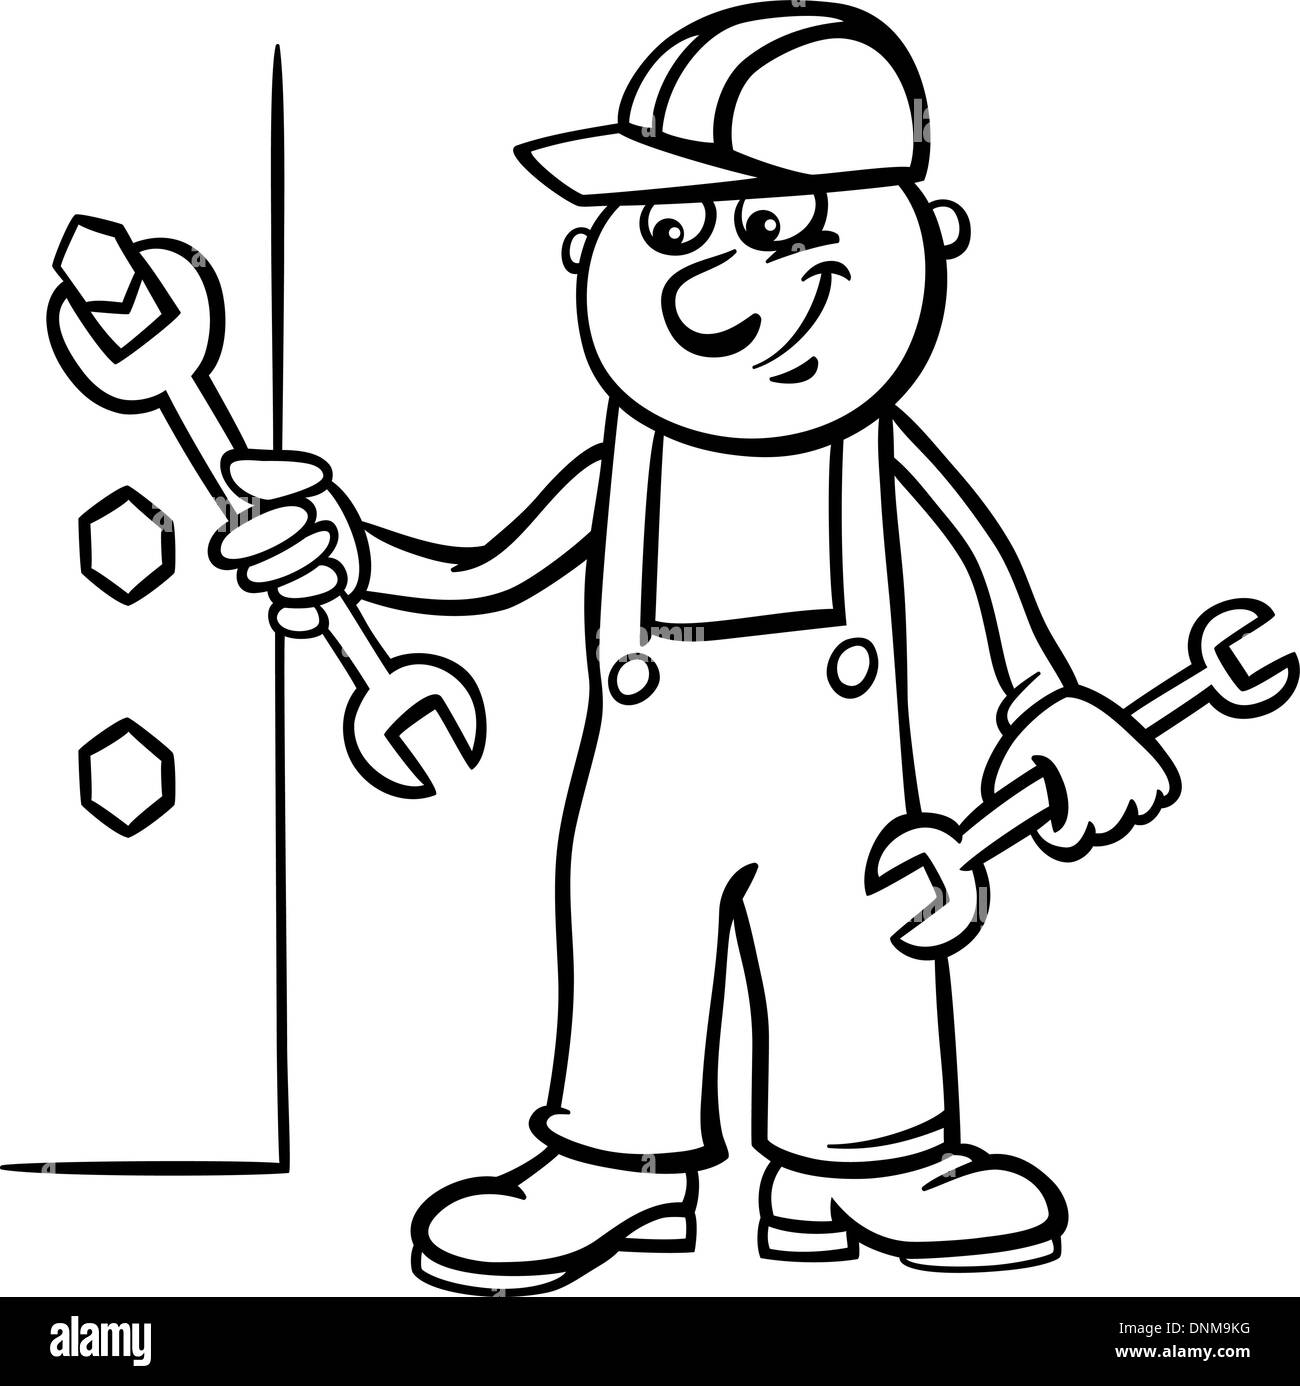 Schwarz / Weiß Cartoon Illustration der Mann Arbeiter oder Handwerker Schraube unten eine Schraube mit Schraubenschlüssel für Kinder in Malbuch Stock Vektor